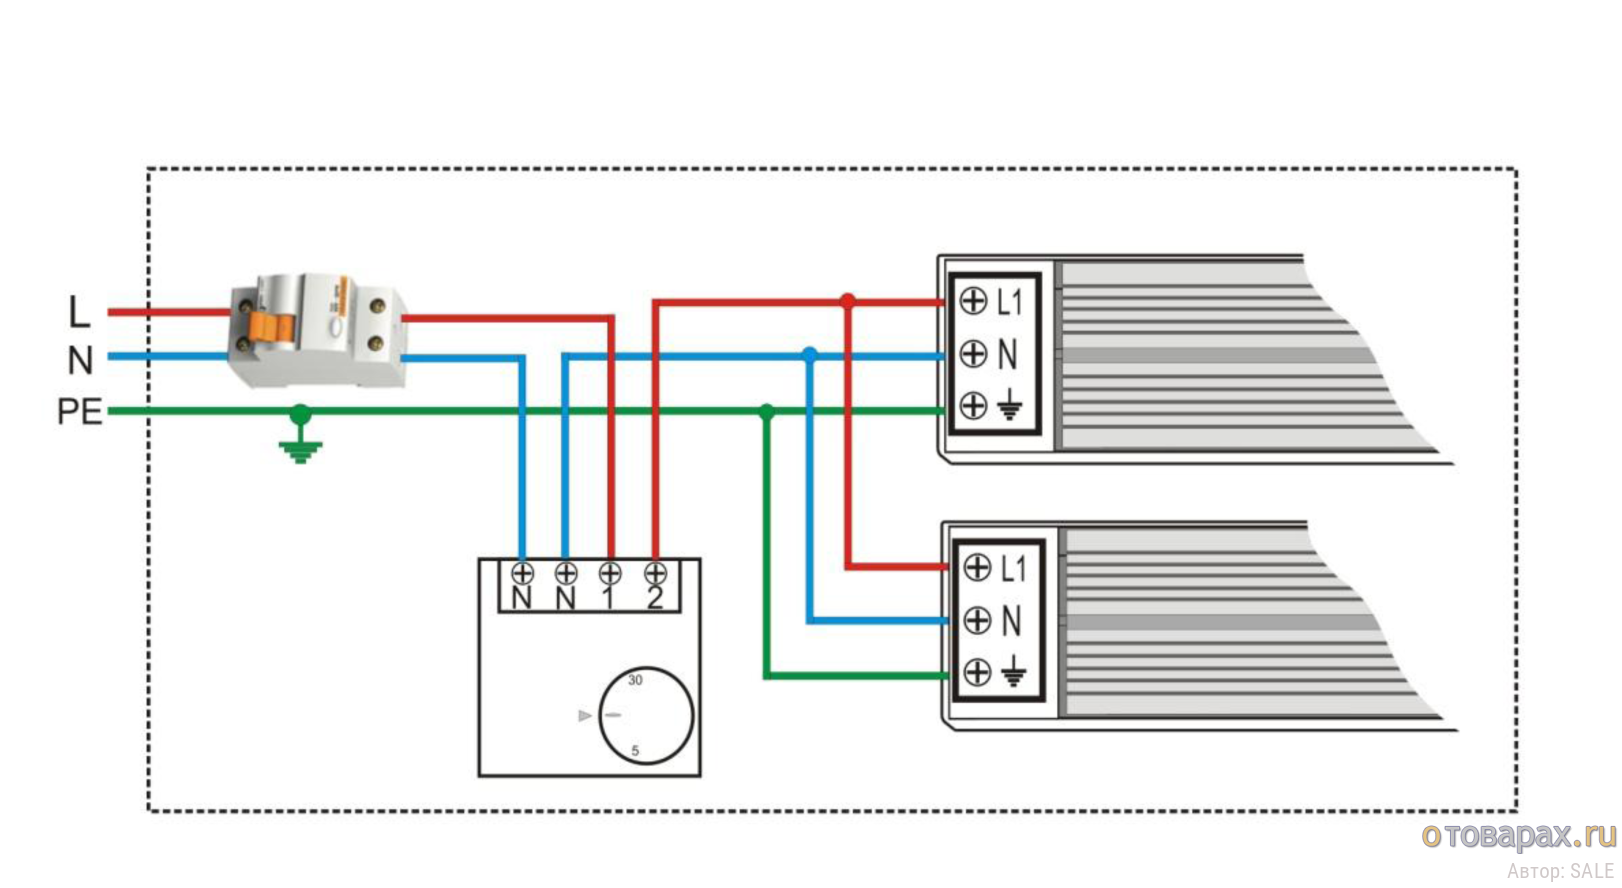 Подключаем инфракрасный обогреватель через терморегулятор